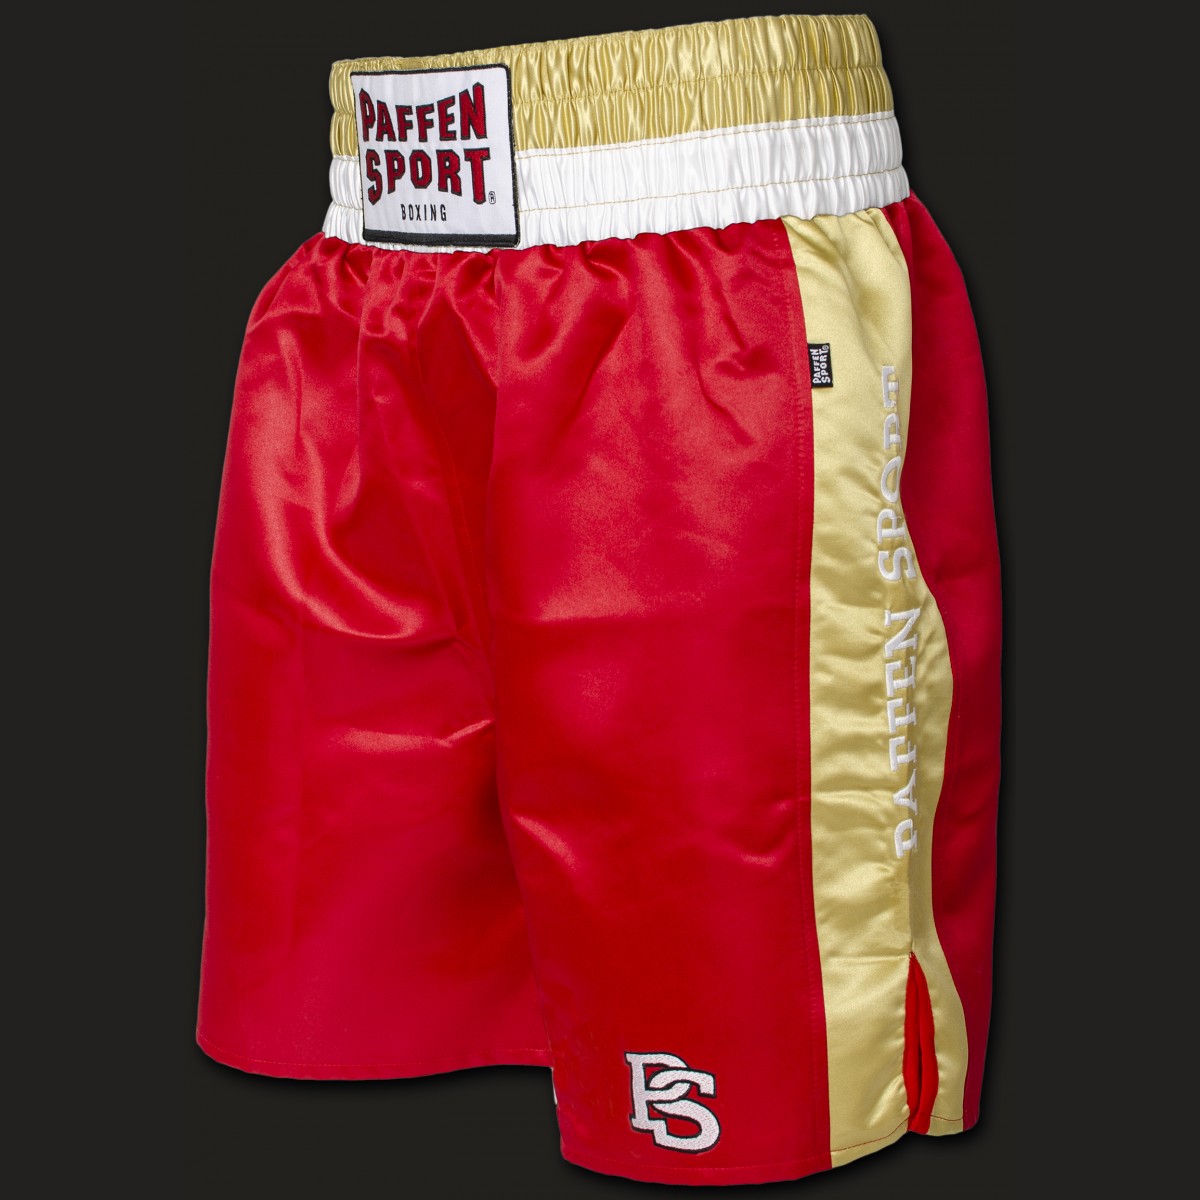 PAFFEN SPORT PRO Mexican Profi-Boxerhose für Wettkampf und Sparring im Boxen 